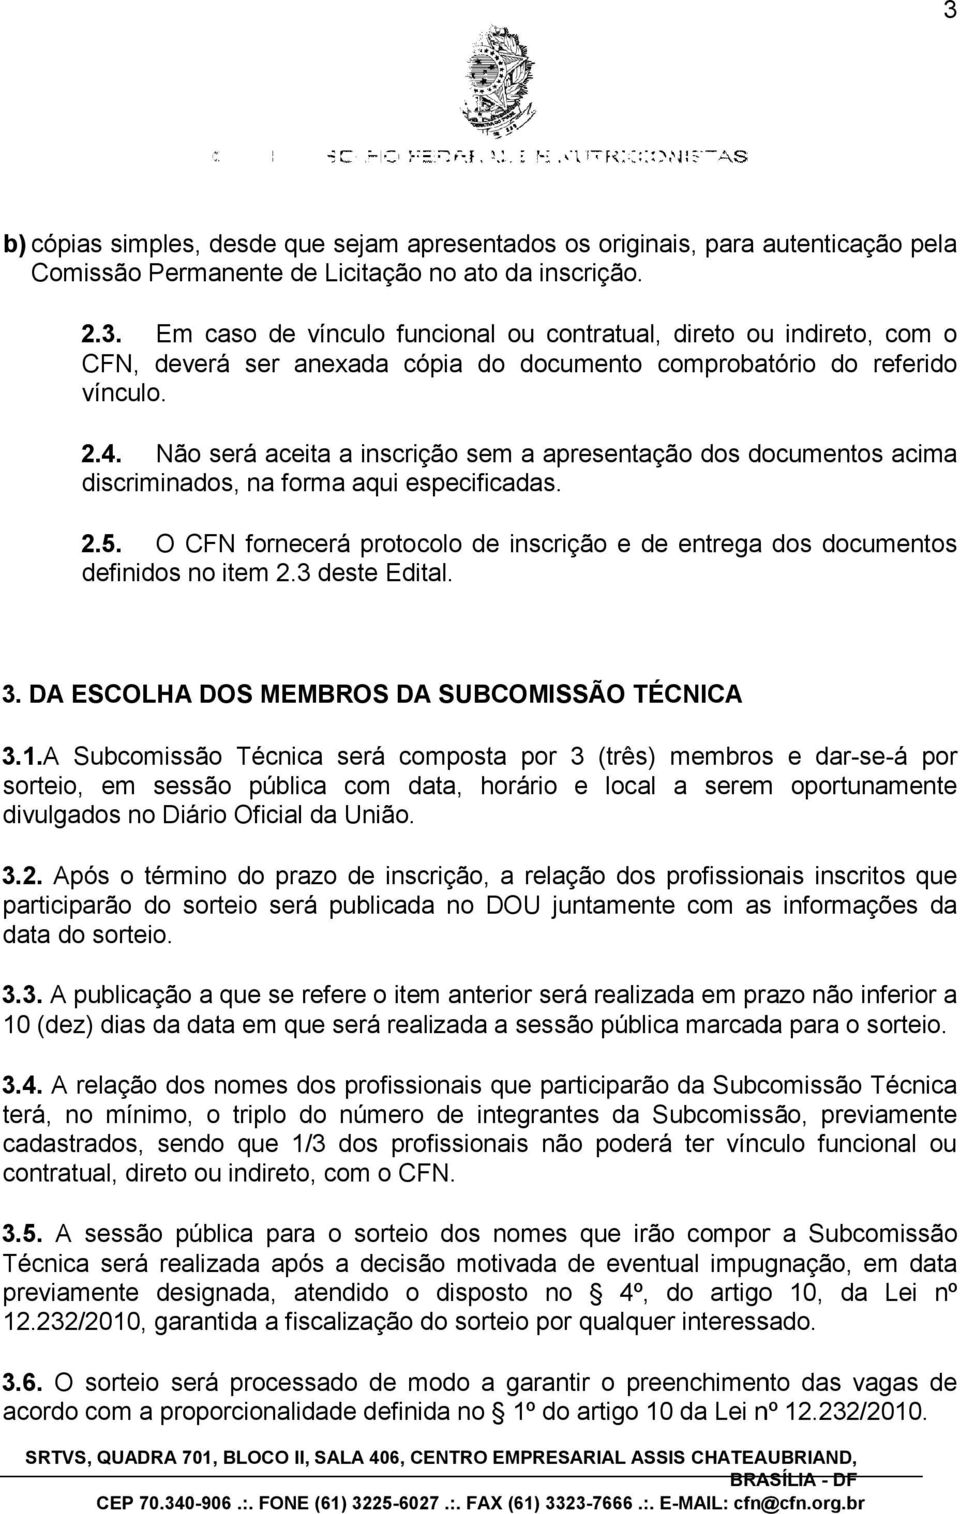 3 deste Edital. dos documentos 3. DA ESCOLHA DOS MEMBROS DA SUBCOMISSÃO TÉCNICA 3.1.